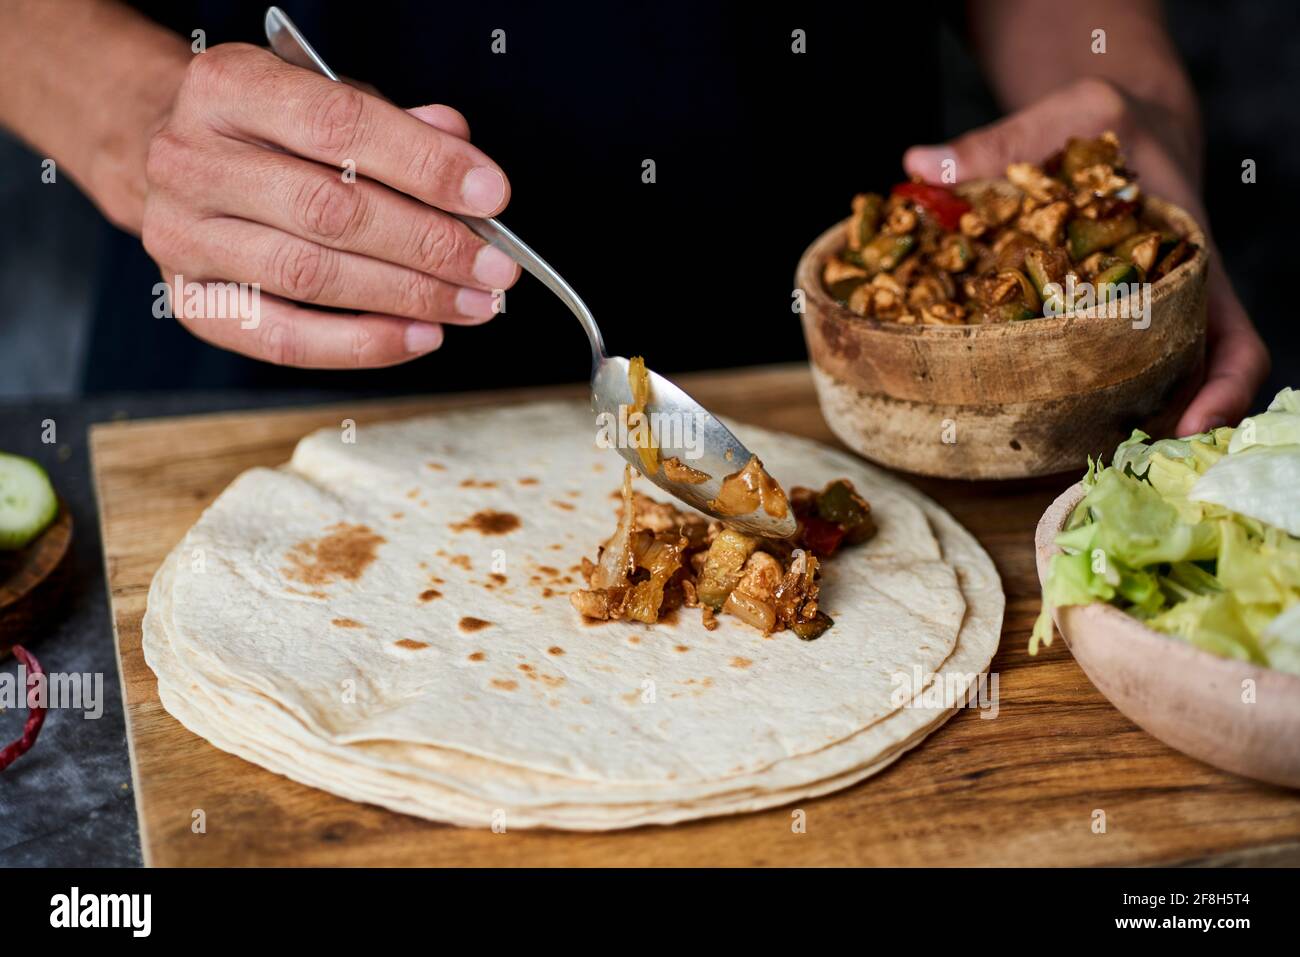 un jeune caucasien remplit un blé dur ou un burrito, avec de la viande de poulet cuite avec différents légumes tels que l'oignon ou le poivron rouge et vert Banque D'Images